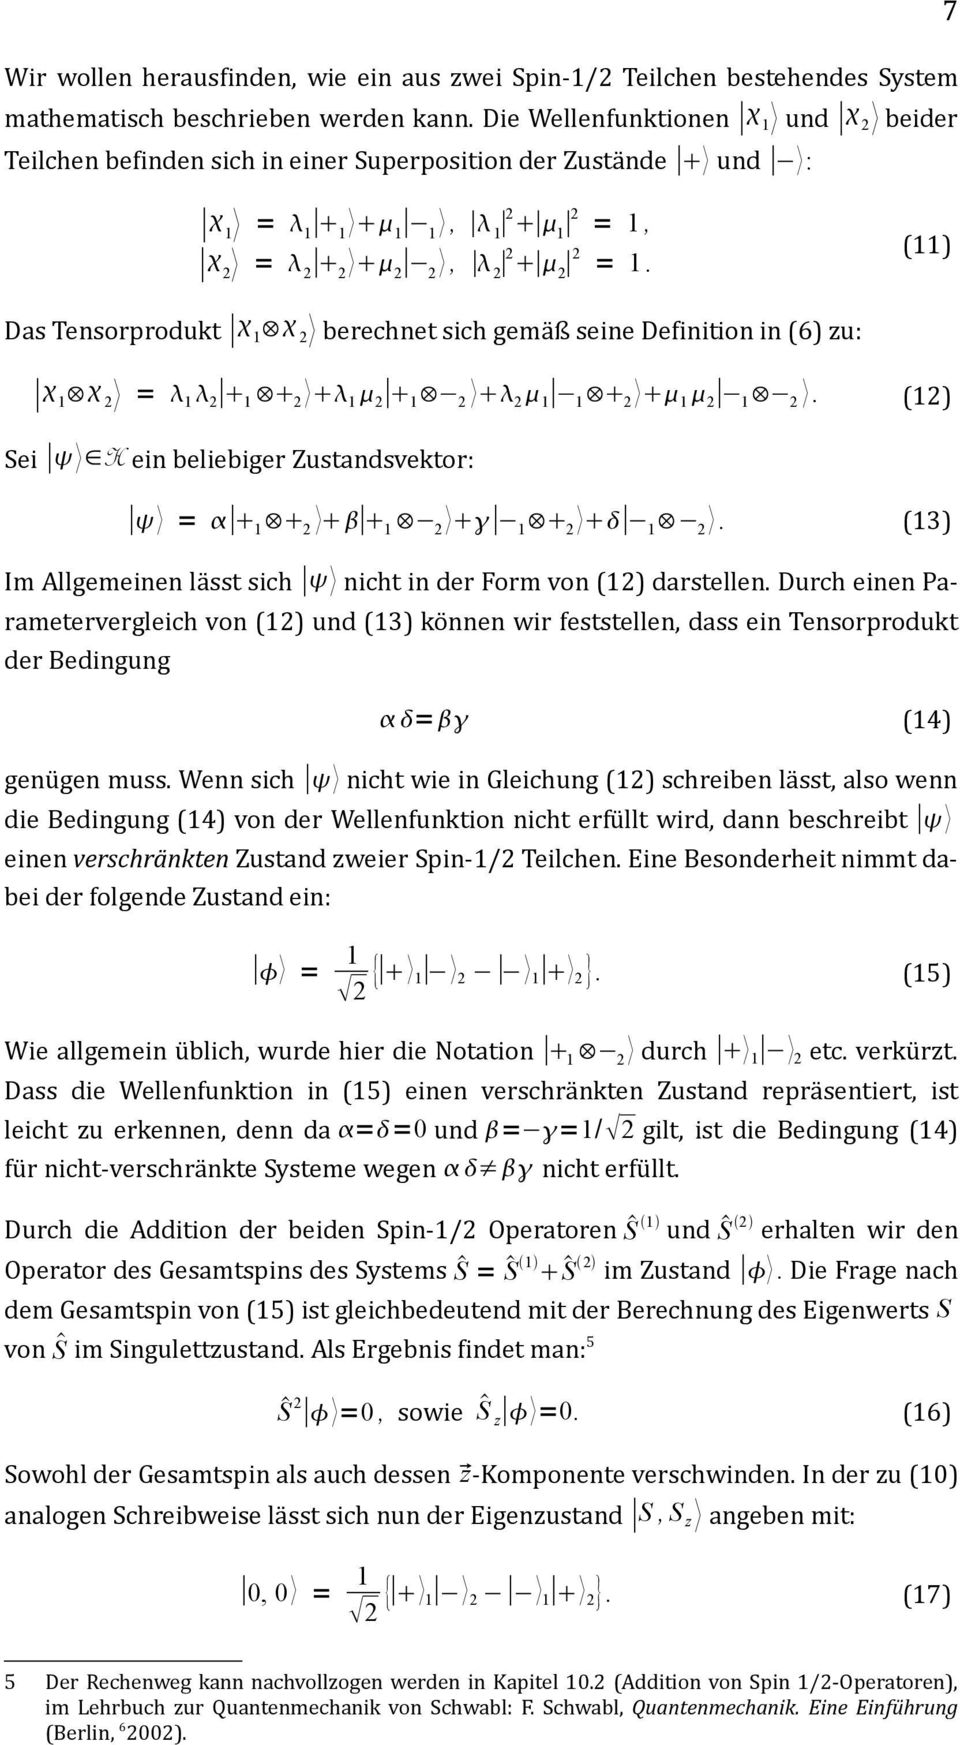 (11) Das Tensorprodukt 1 2 berechnet sich gemäß seine Definition in (6) zu: 1 2 = 1 2 1 2 1 2 1 2 2 1 1 2 1 2 1 2. (12) Sei H ein beliebiger Zustandsvektor: = 1 2 1 2 1 2 1 2.